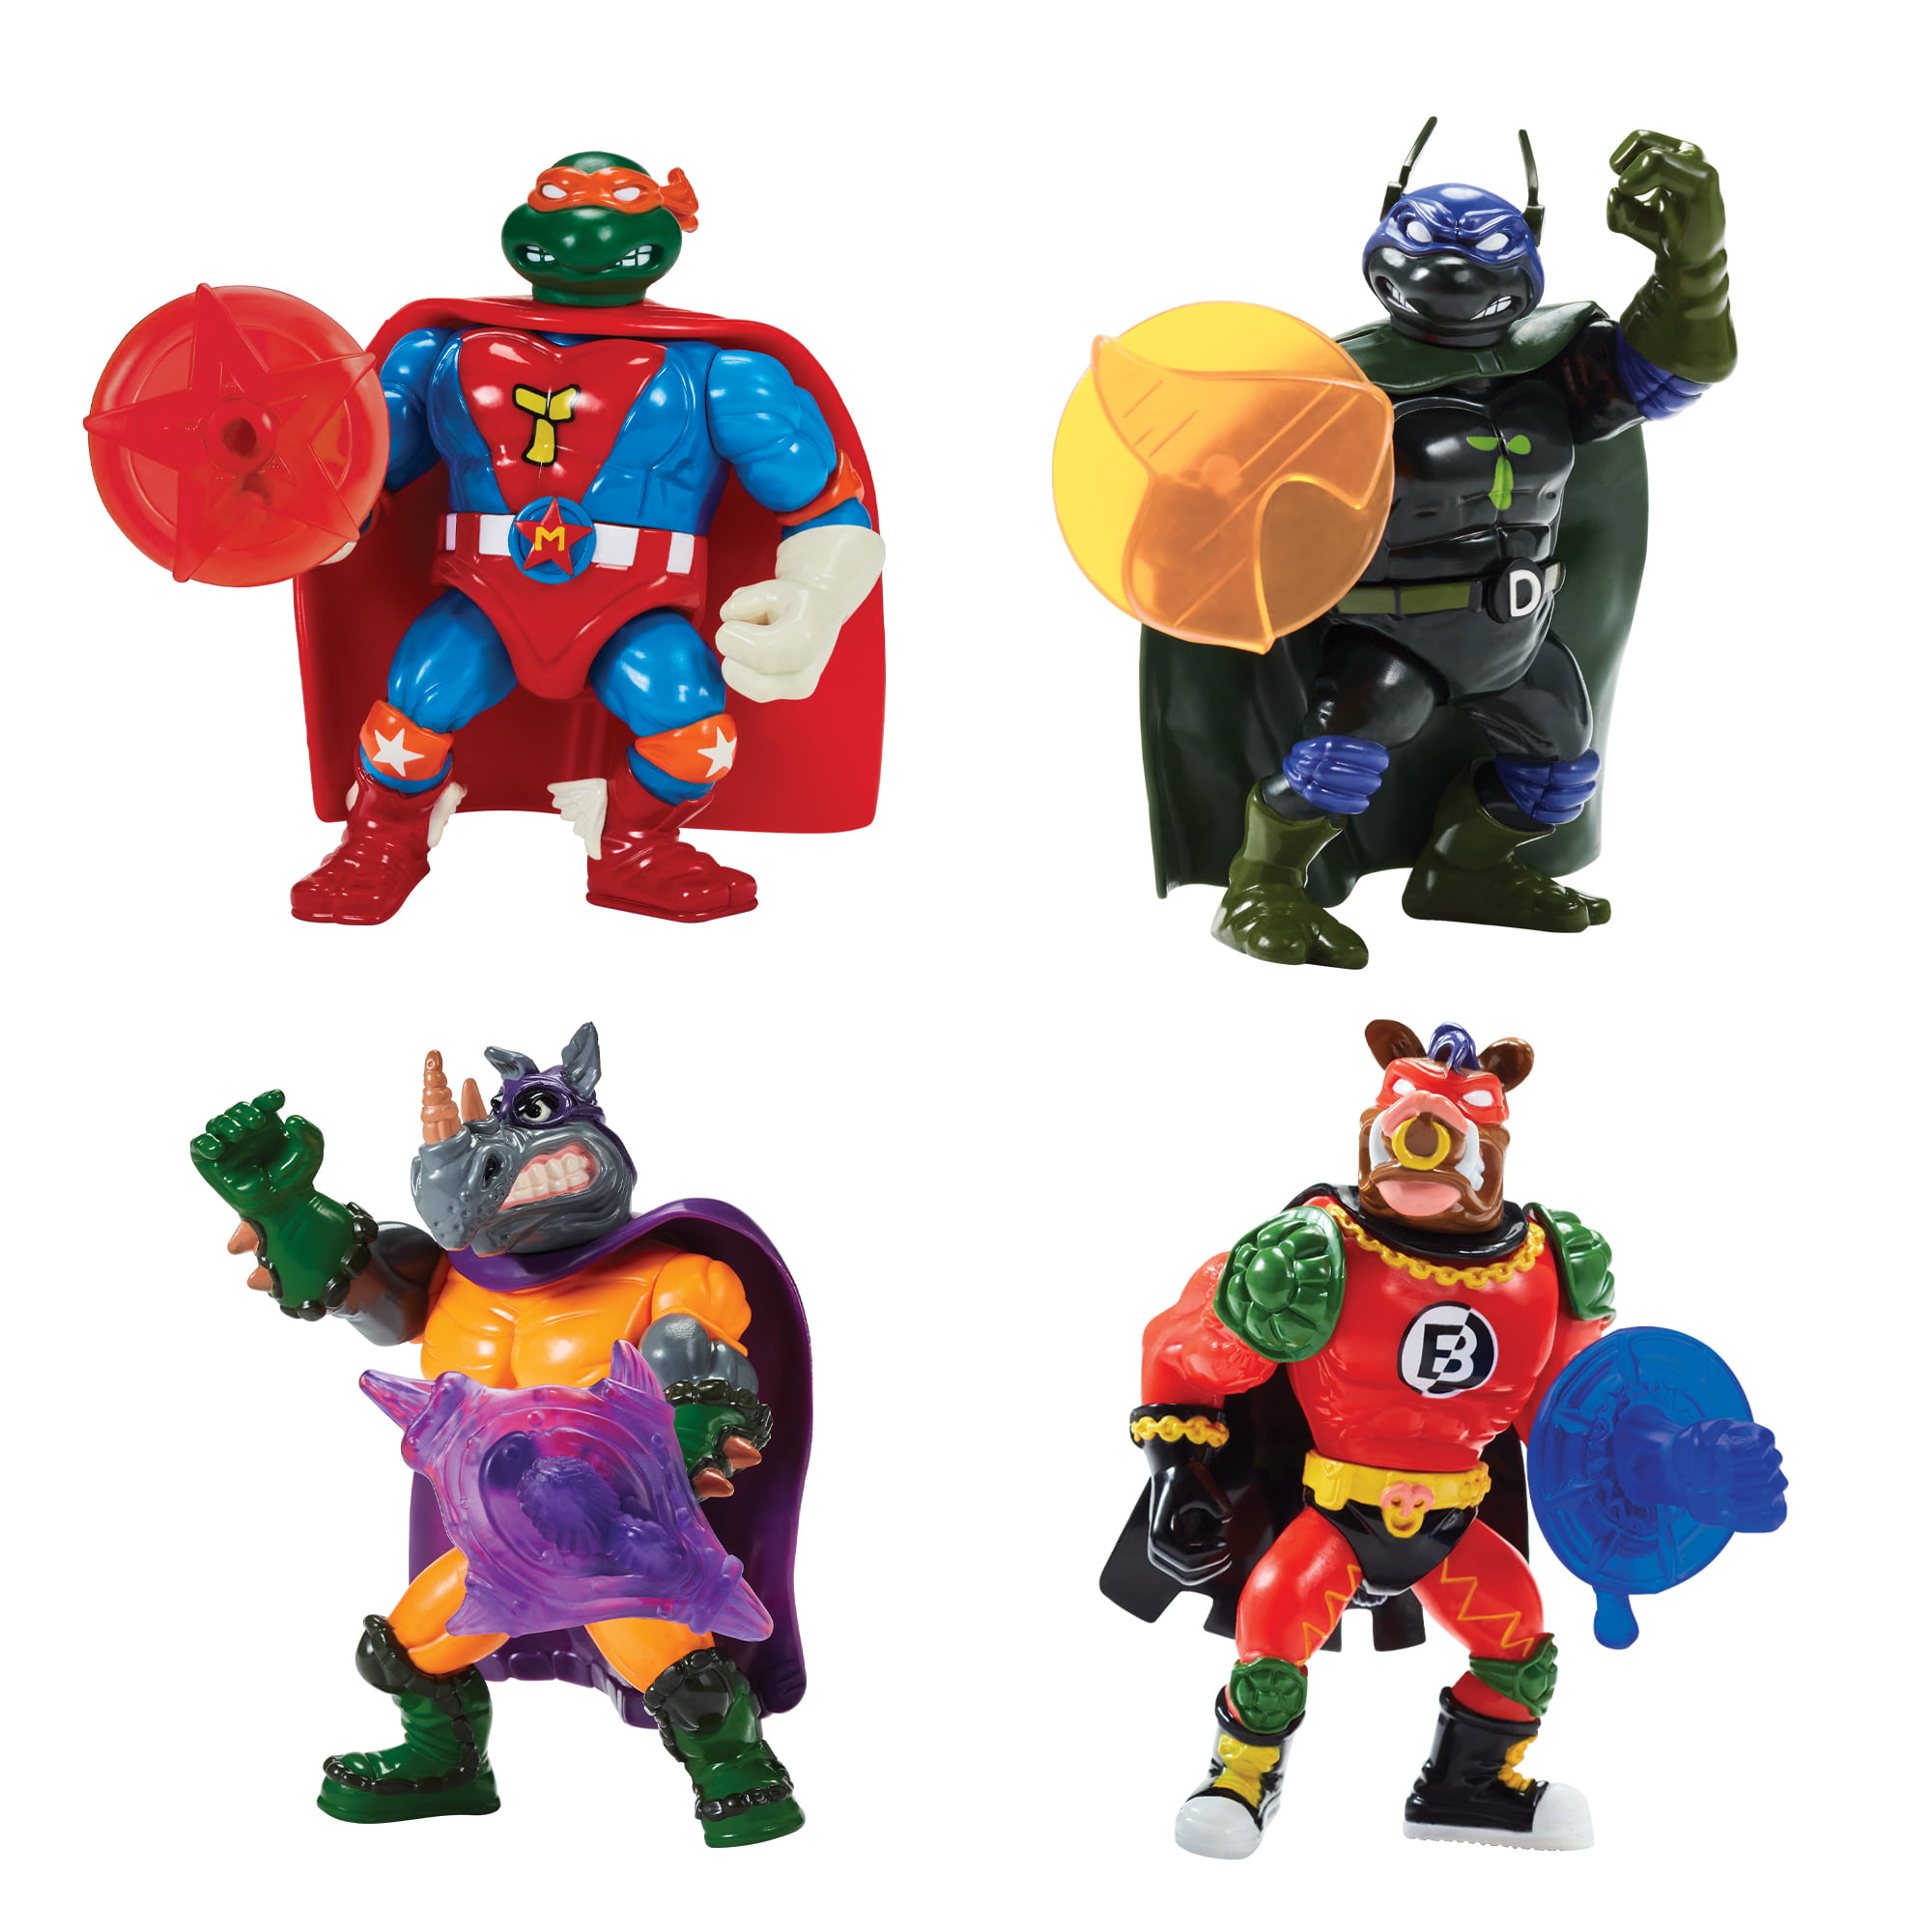 4-Figure Teenage Mutant Ninja Turtles Sewer Heroes  Bundle w/ Accessories $16.25 + Free S&H w/ Walmart+ or $35+